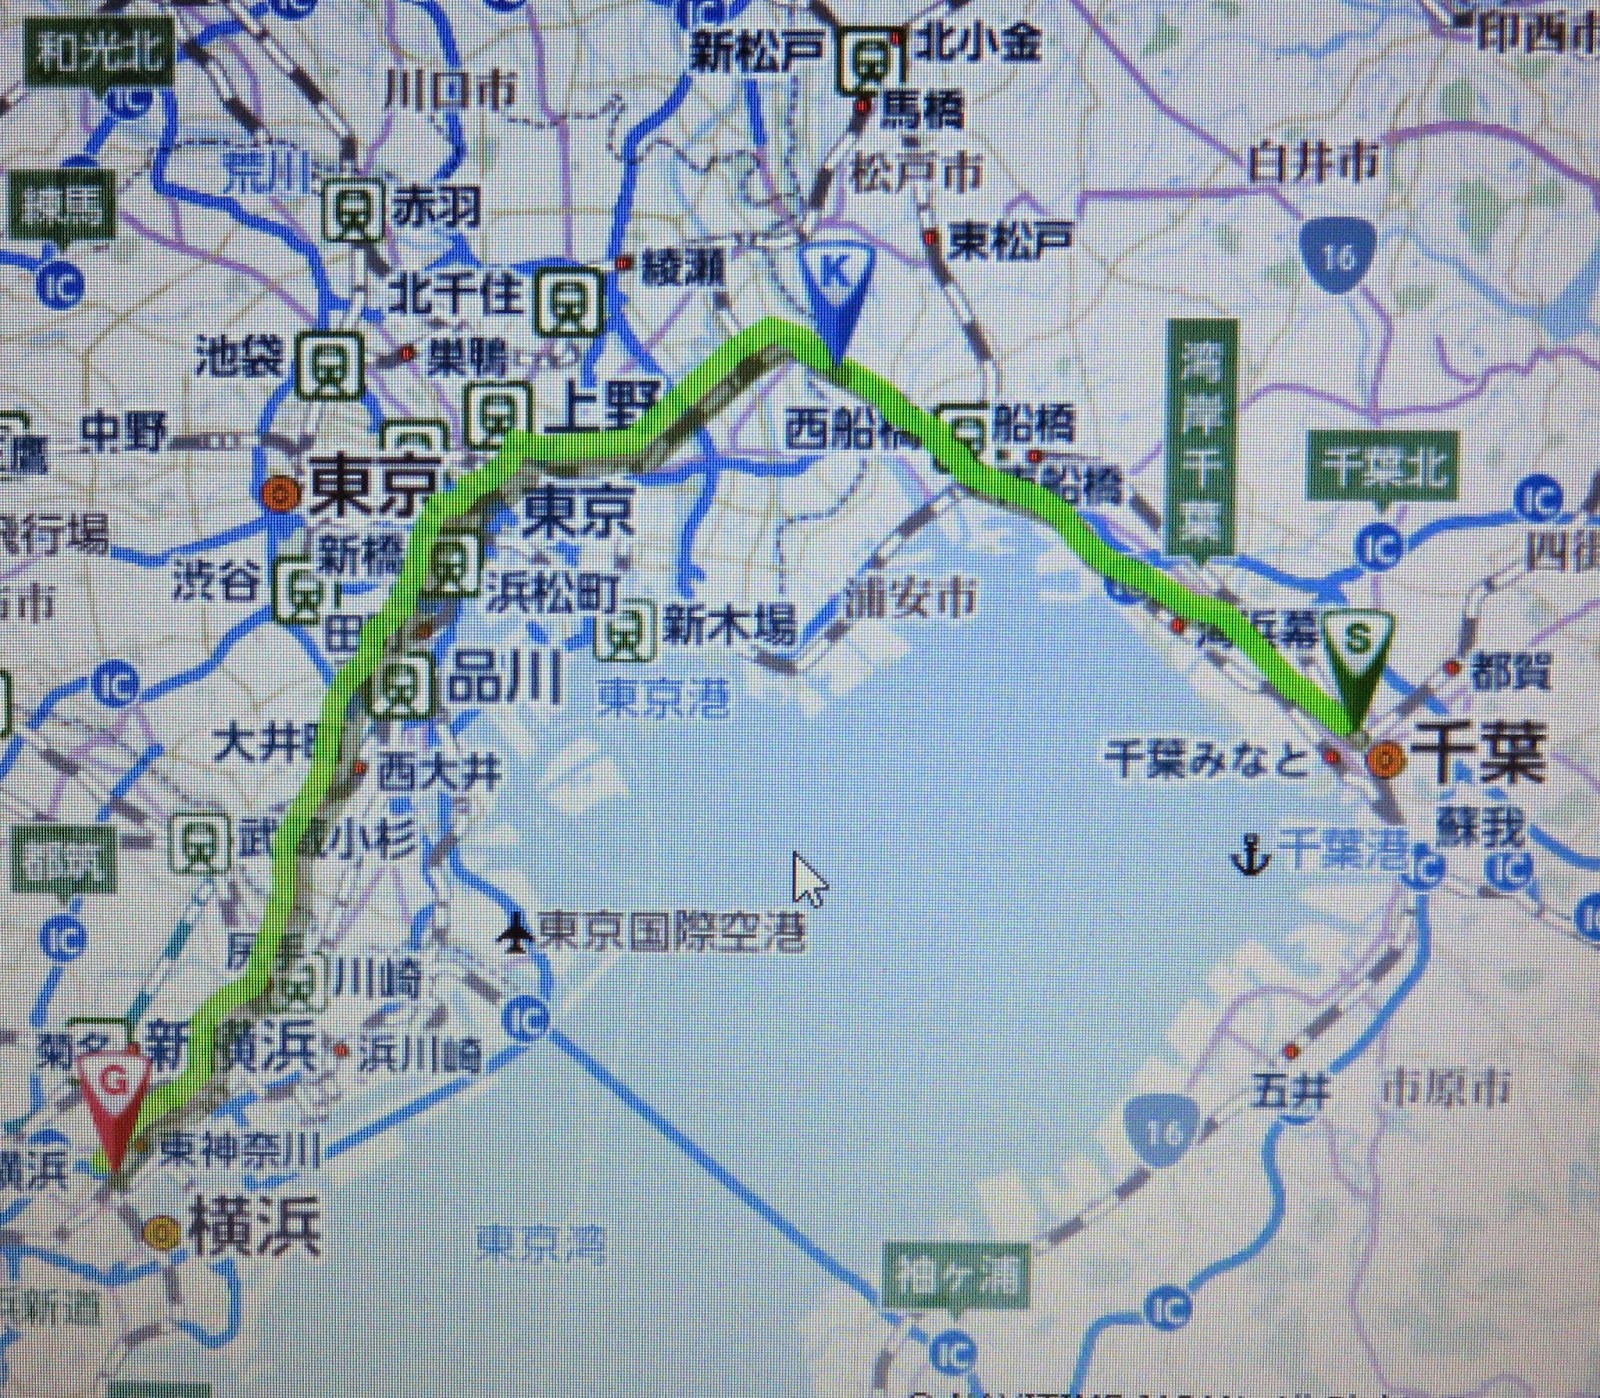 マチョ松の 輪道 りんどう をゆく 千葉から東京経由 横浜まで